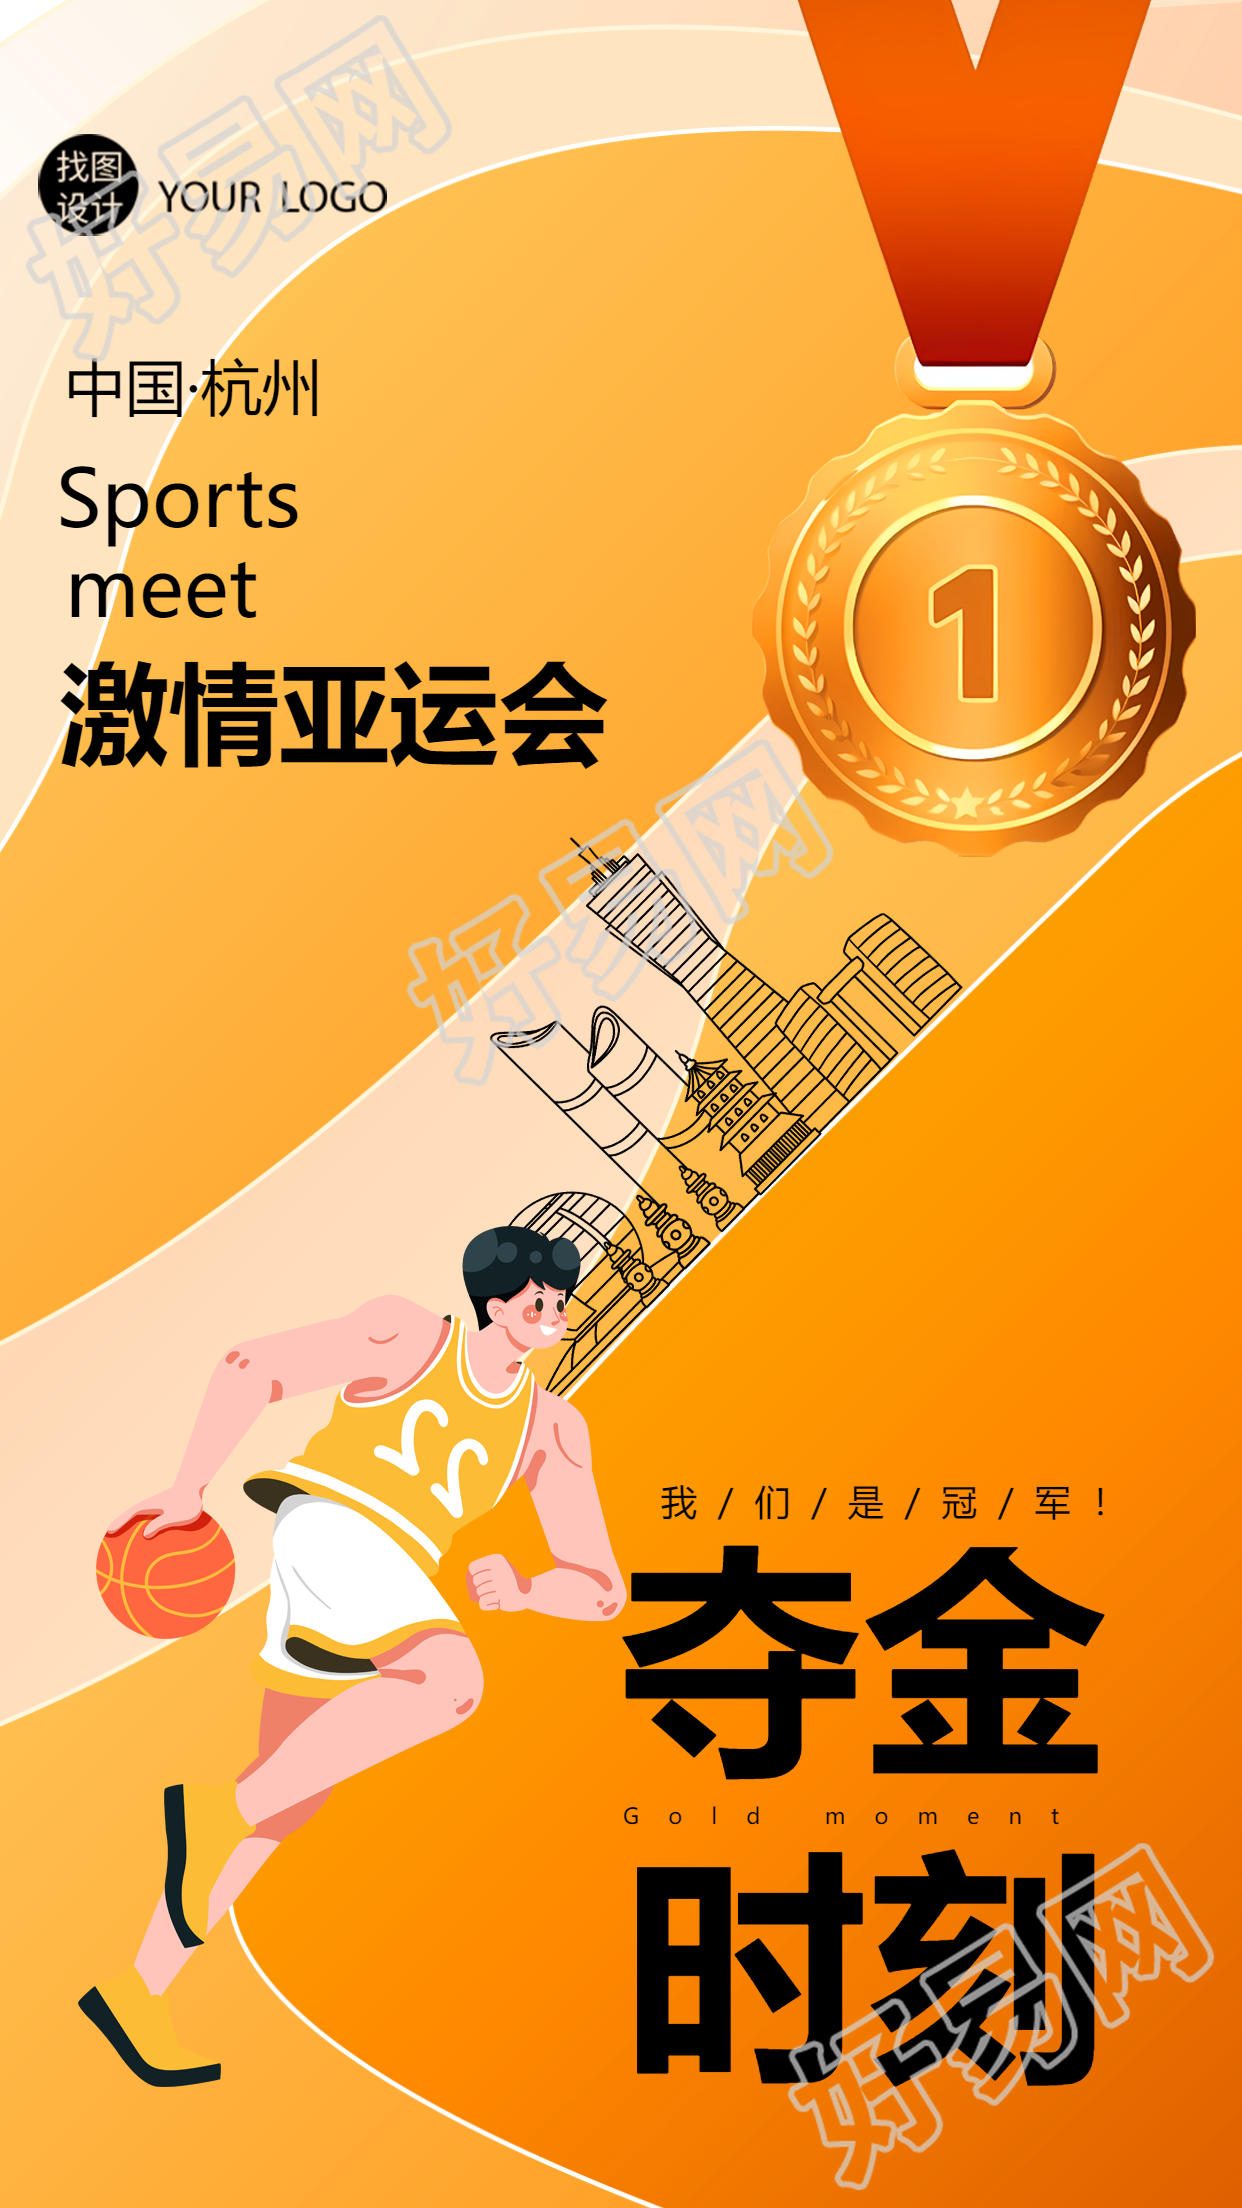 中国·杭州激情亚运会夺金时刻手机海报